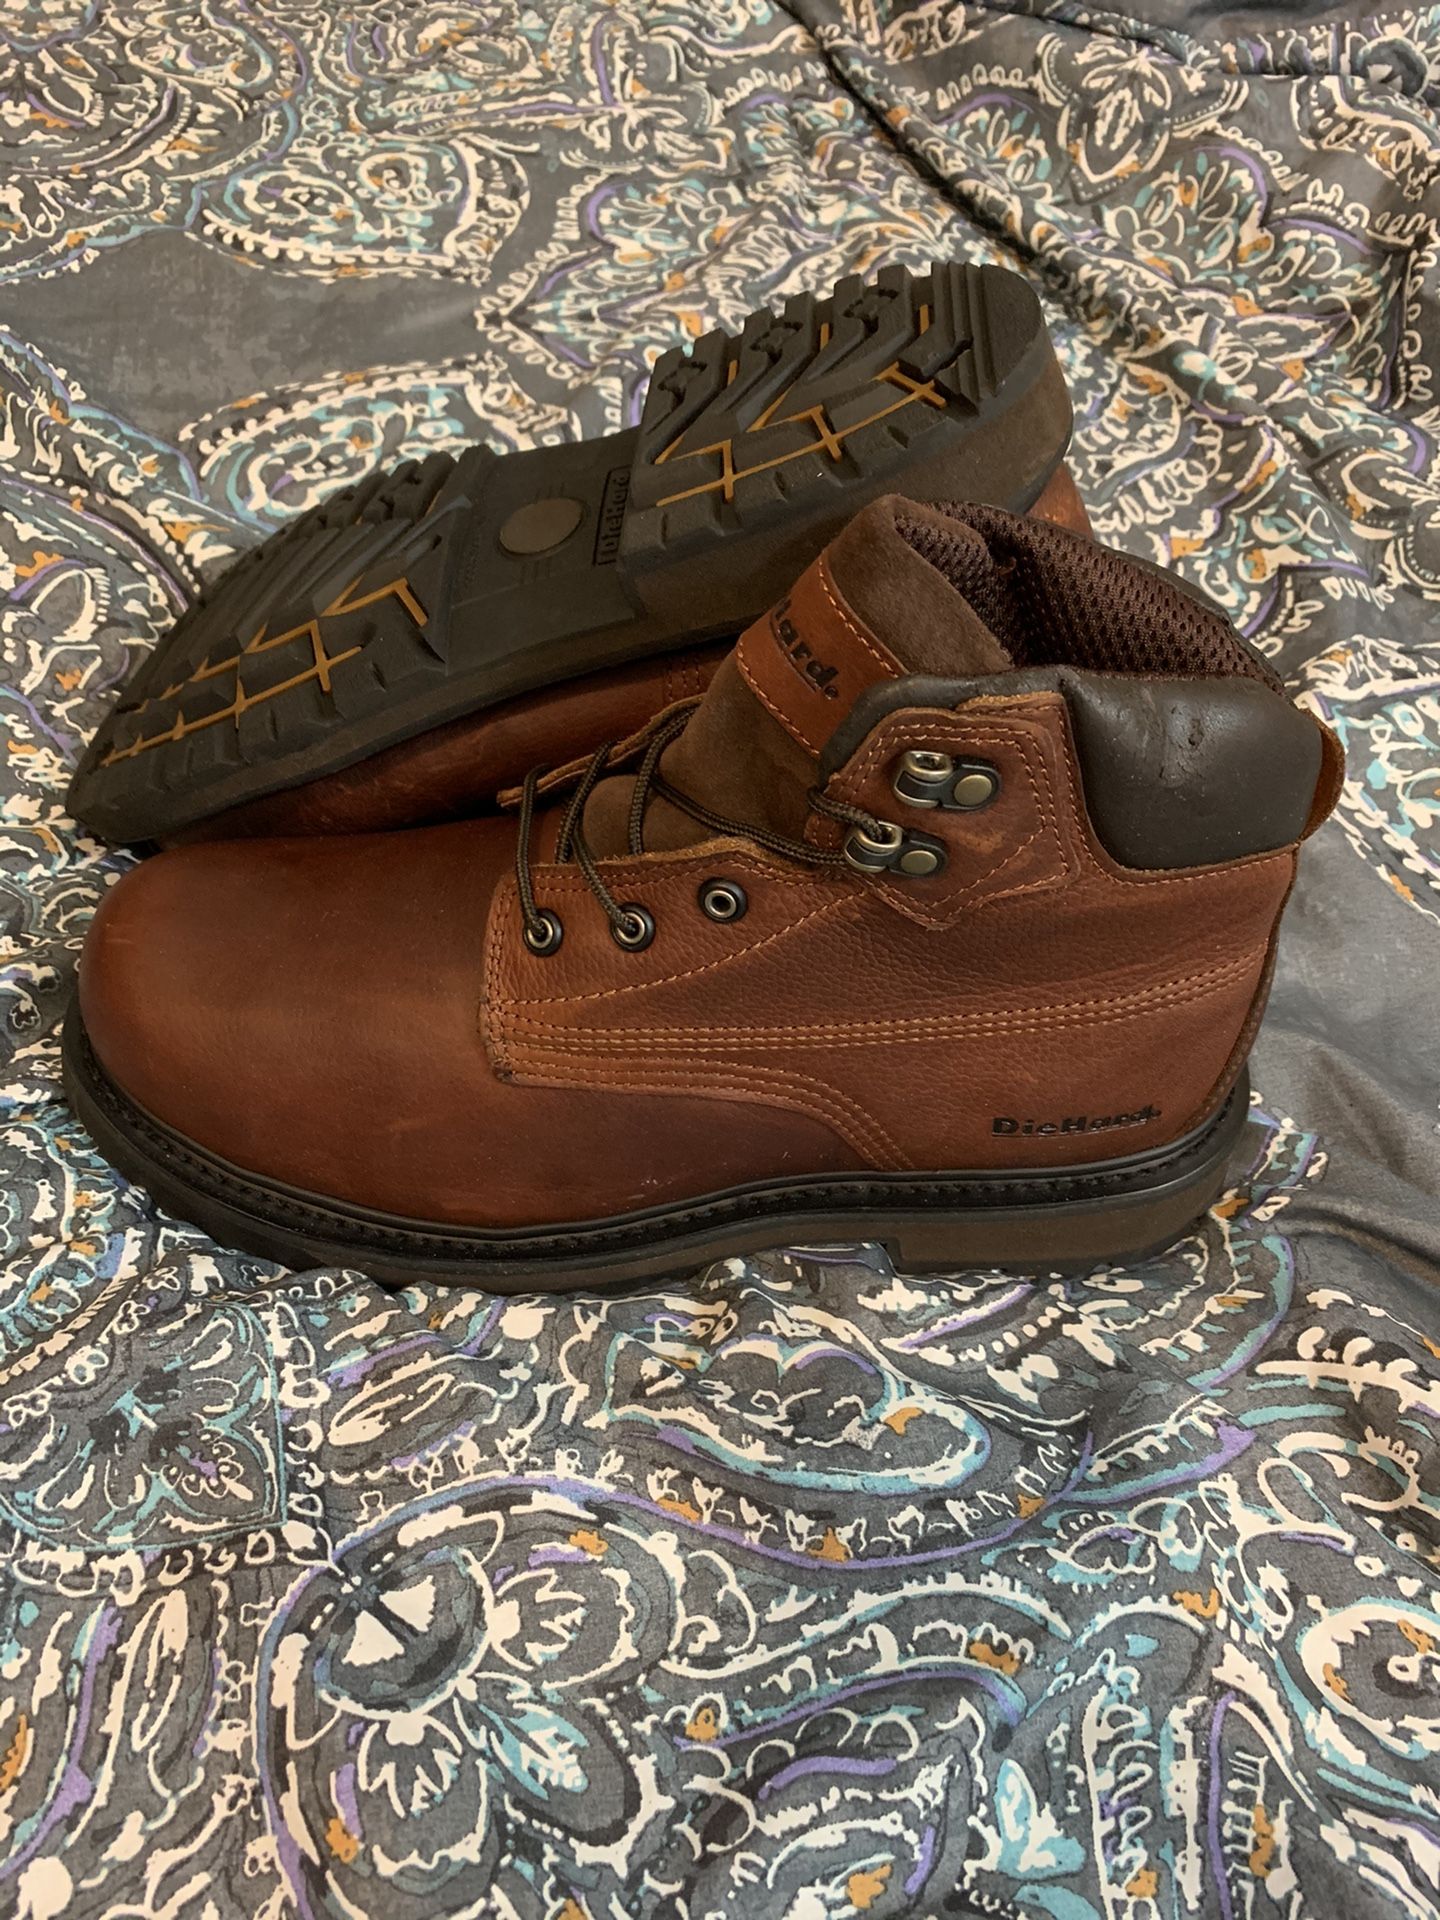 Men’s boots 🥾 toe size 10 1/2